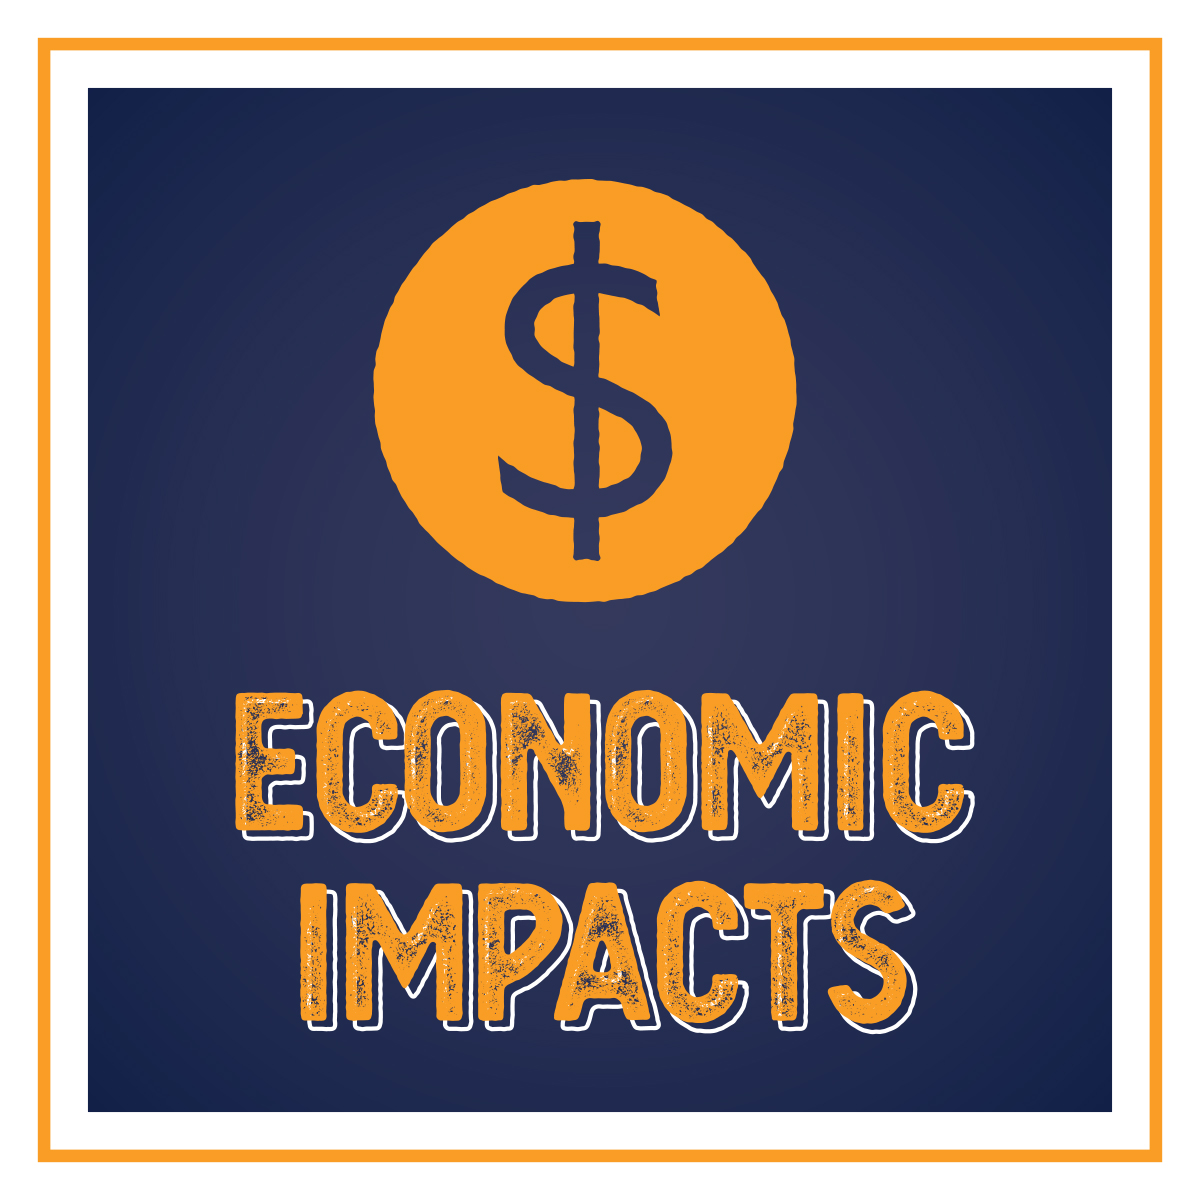 Economic Impacts of Iowa Lakes